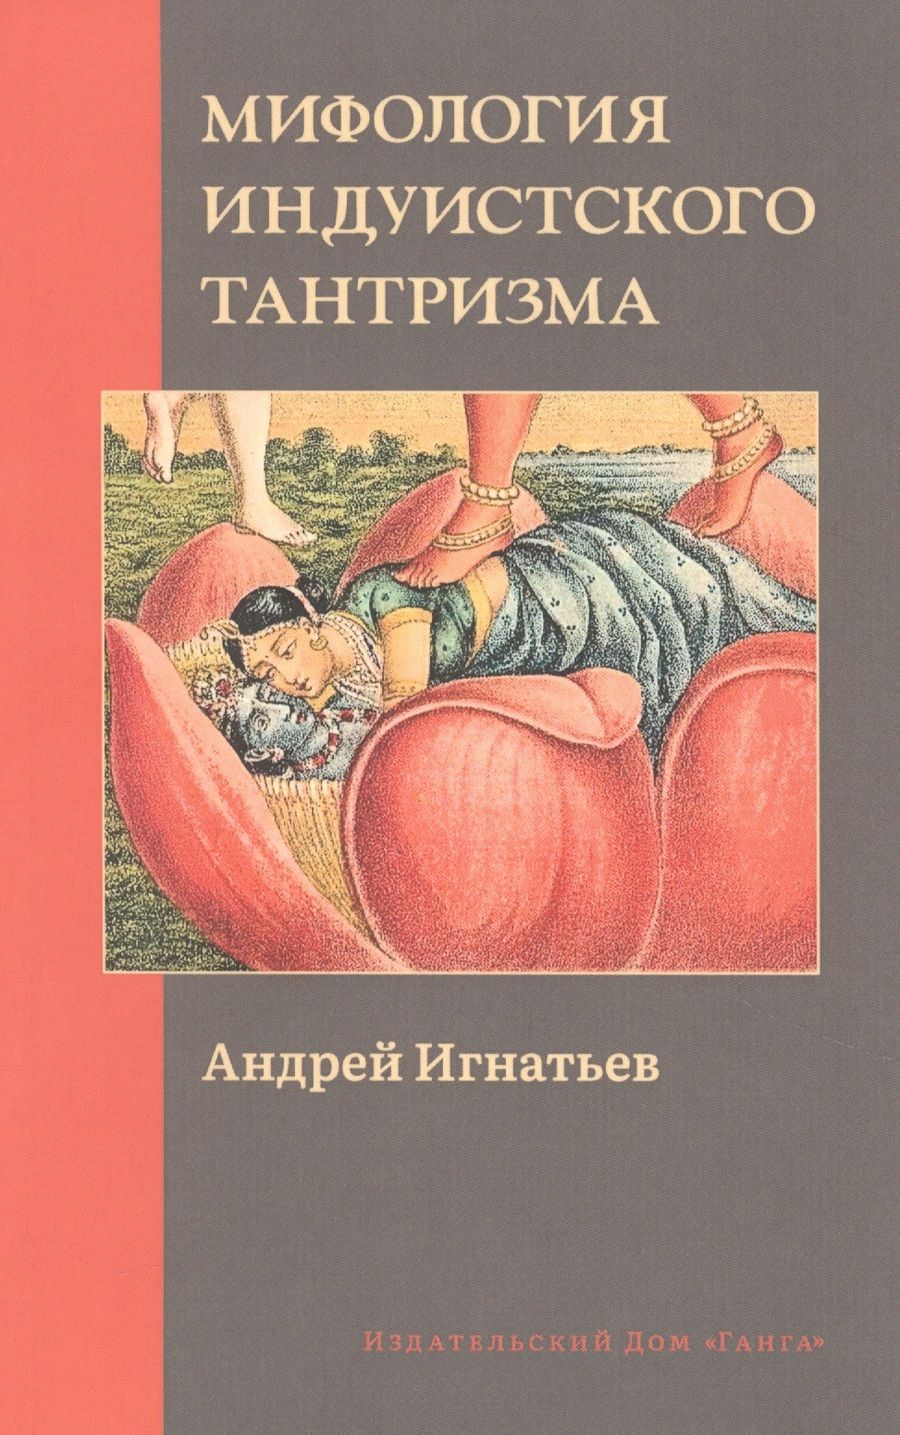 Обложка книги "Андрей Игнатьев: Мифология индуистского тантризма"